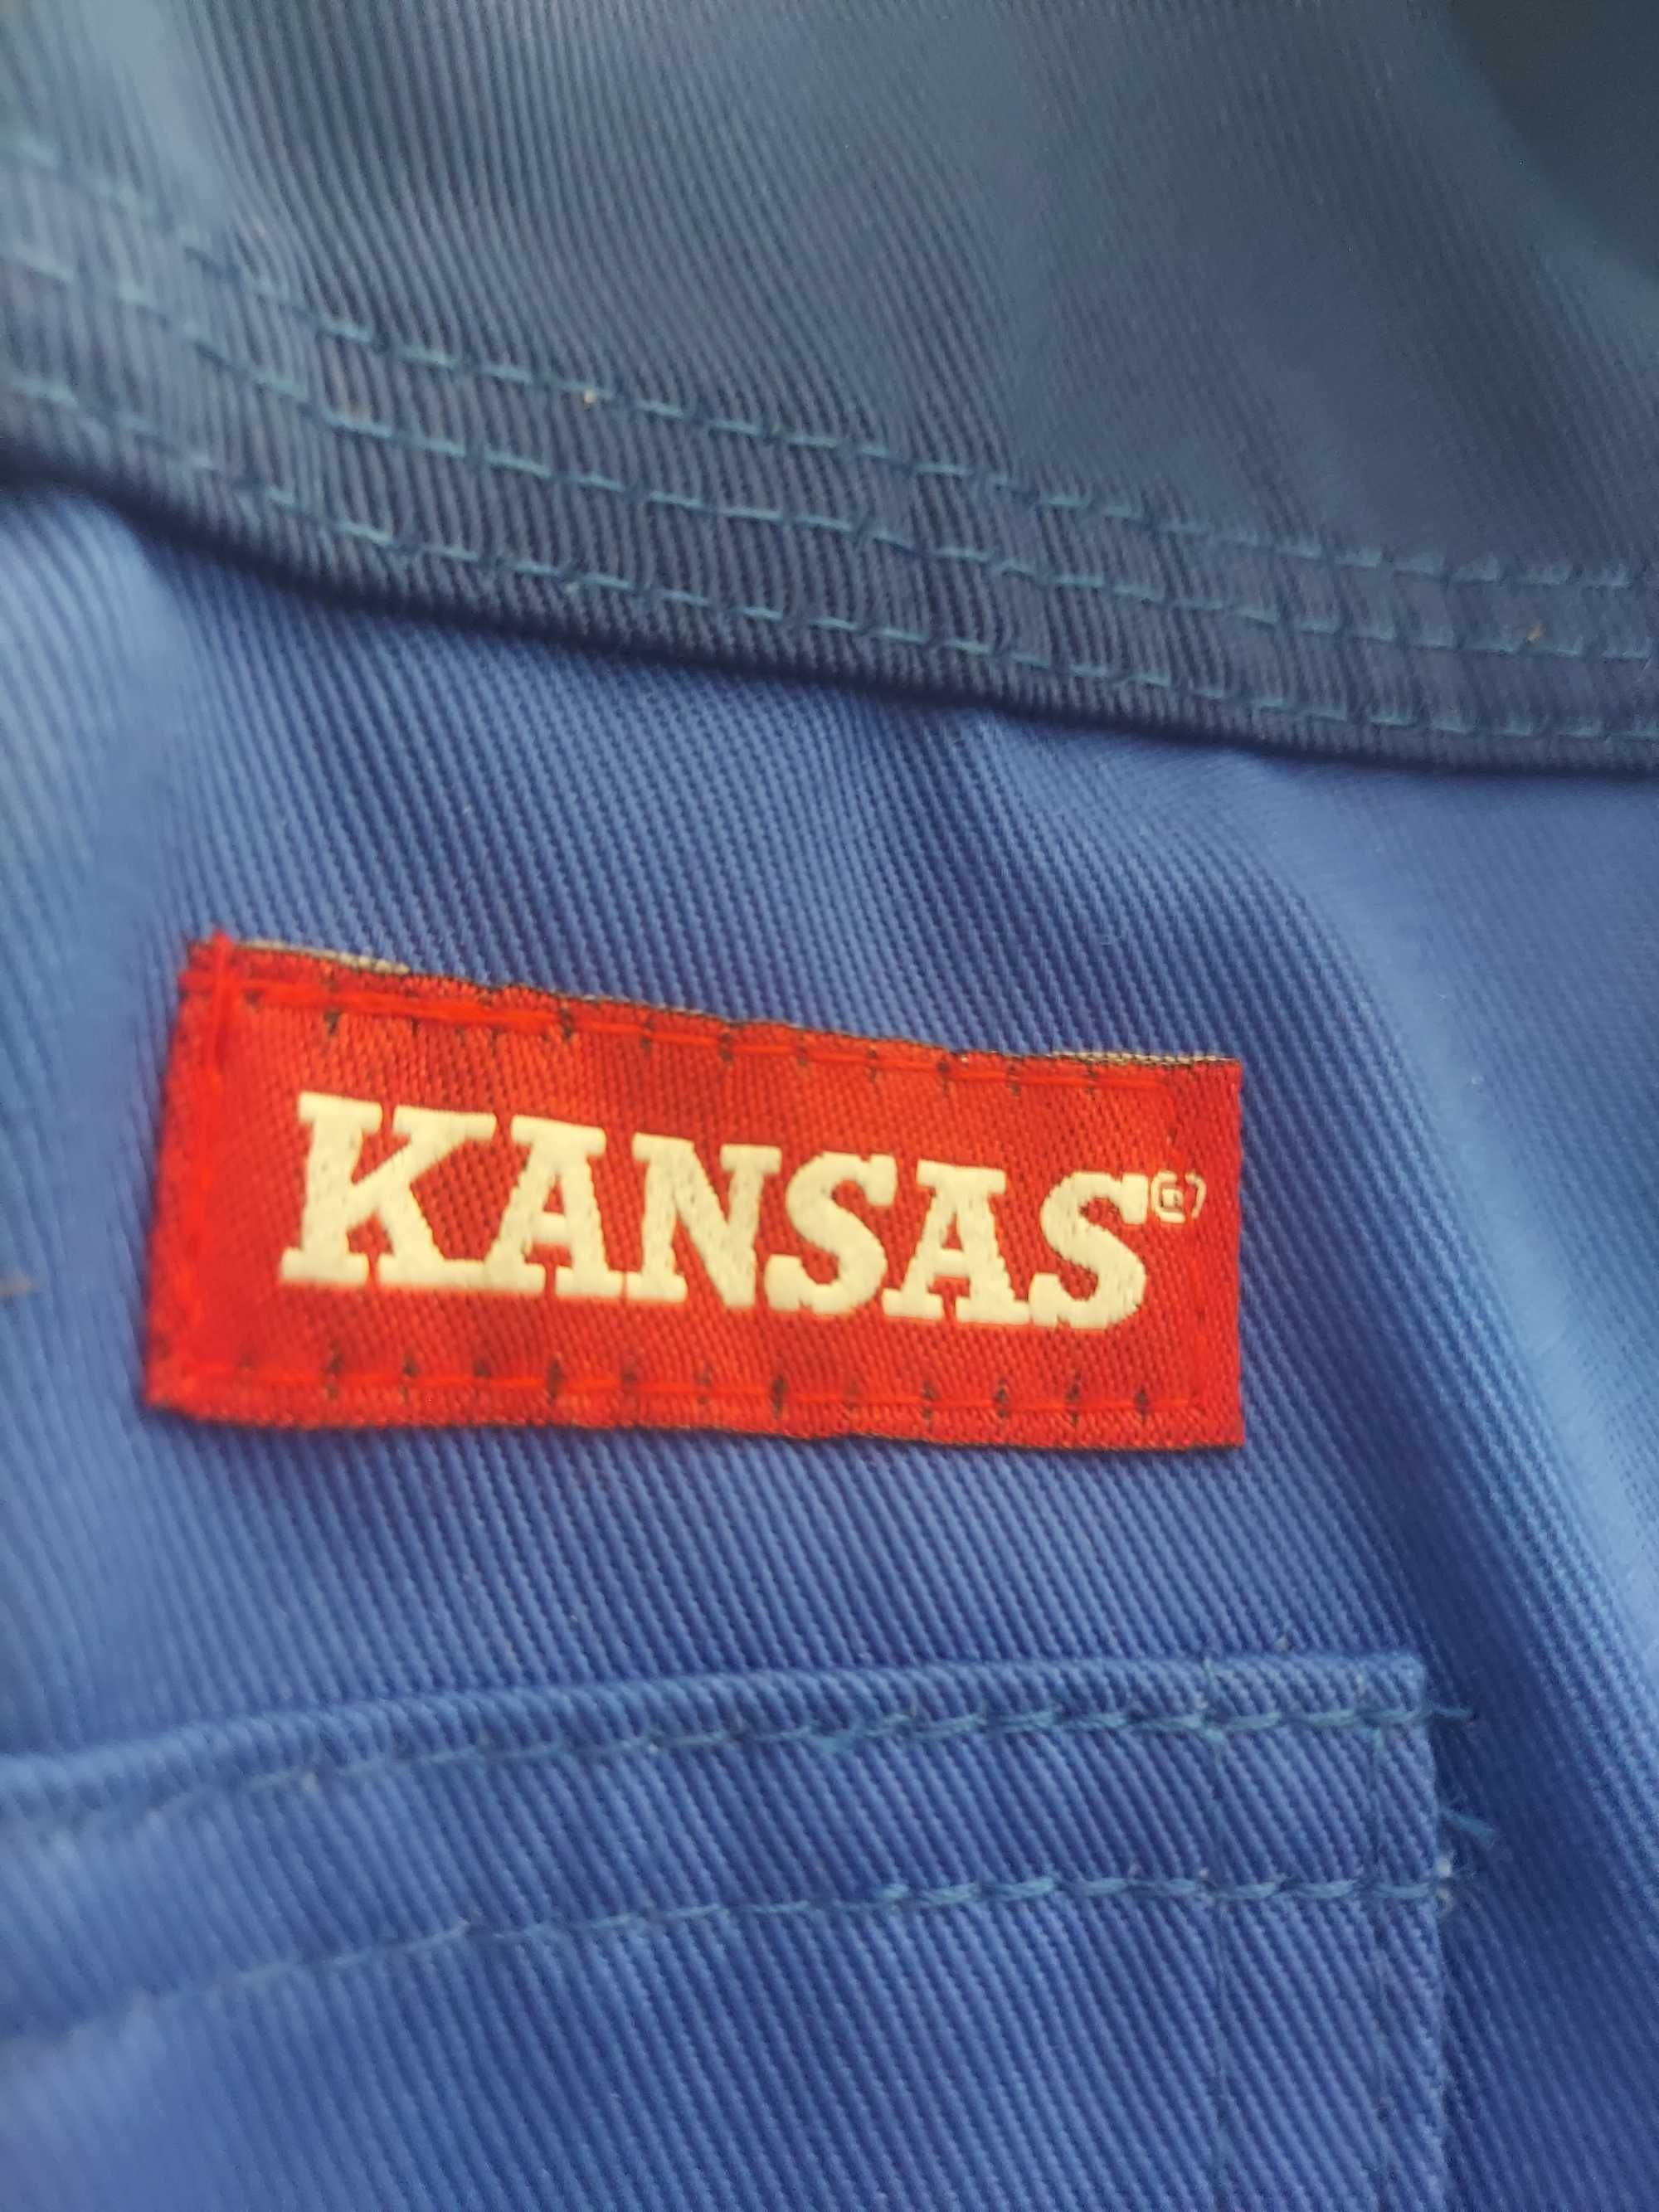 Mocna markowa bluza robocza firmy Kansas rozmiar L